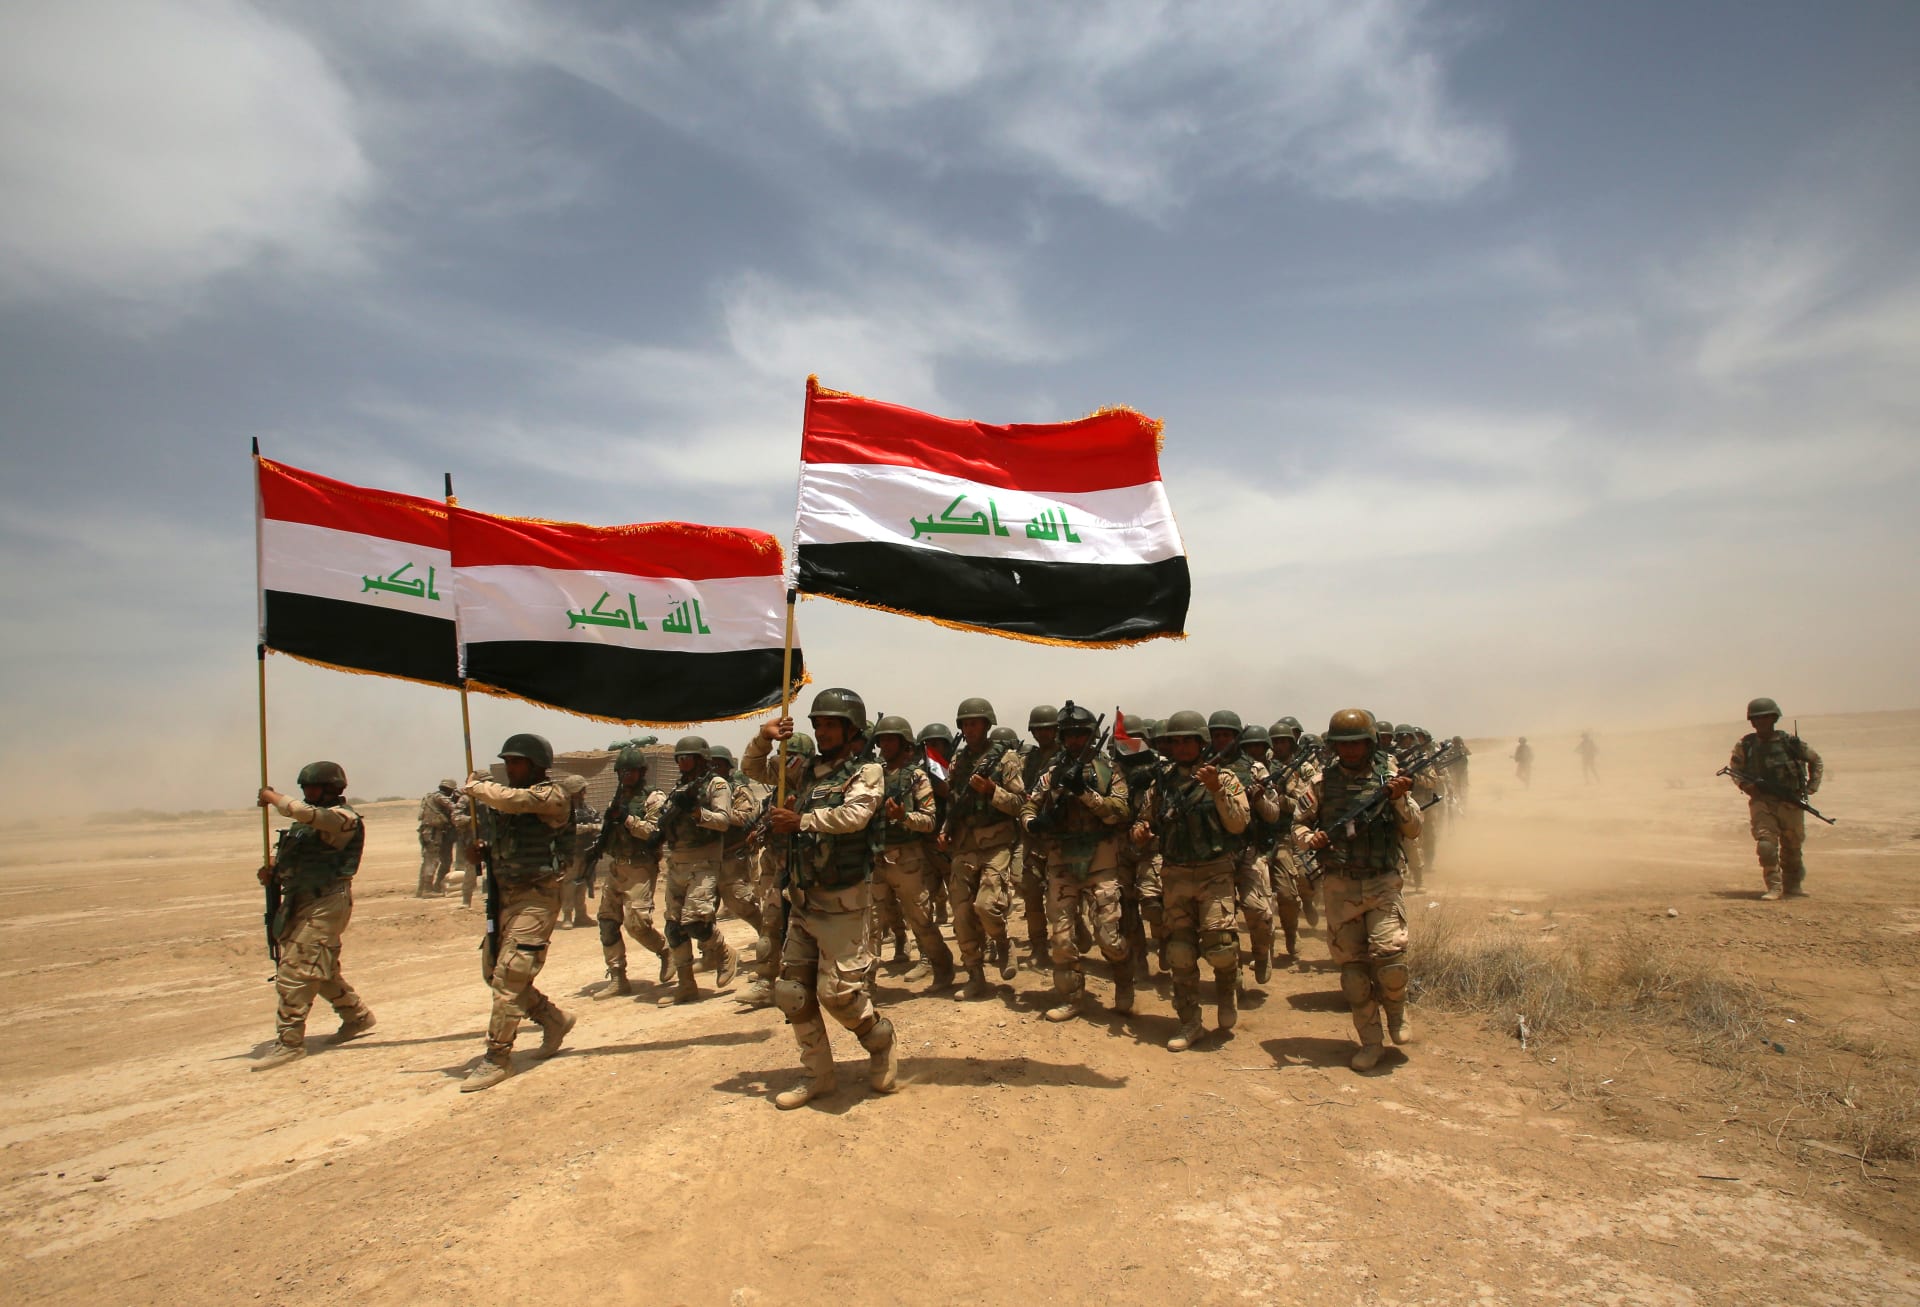 الجيش العراقي يُخطر أهالي الفلوجة بمغادرة المدينة استعدادا لحملة "تحريرها من داعش"